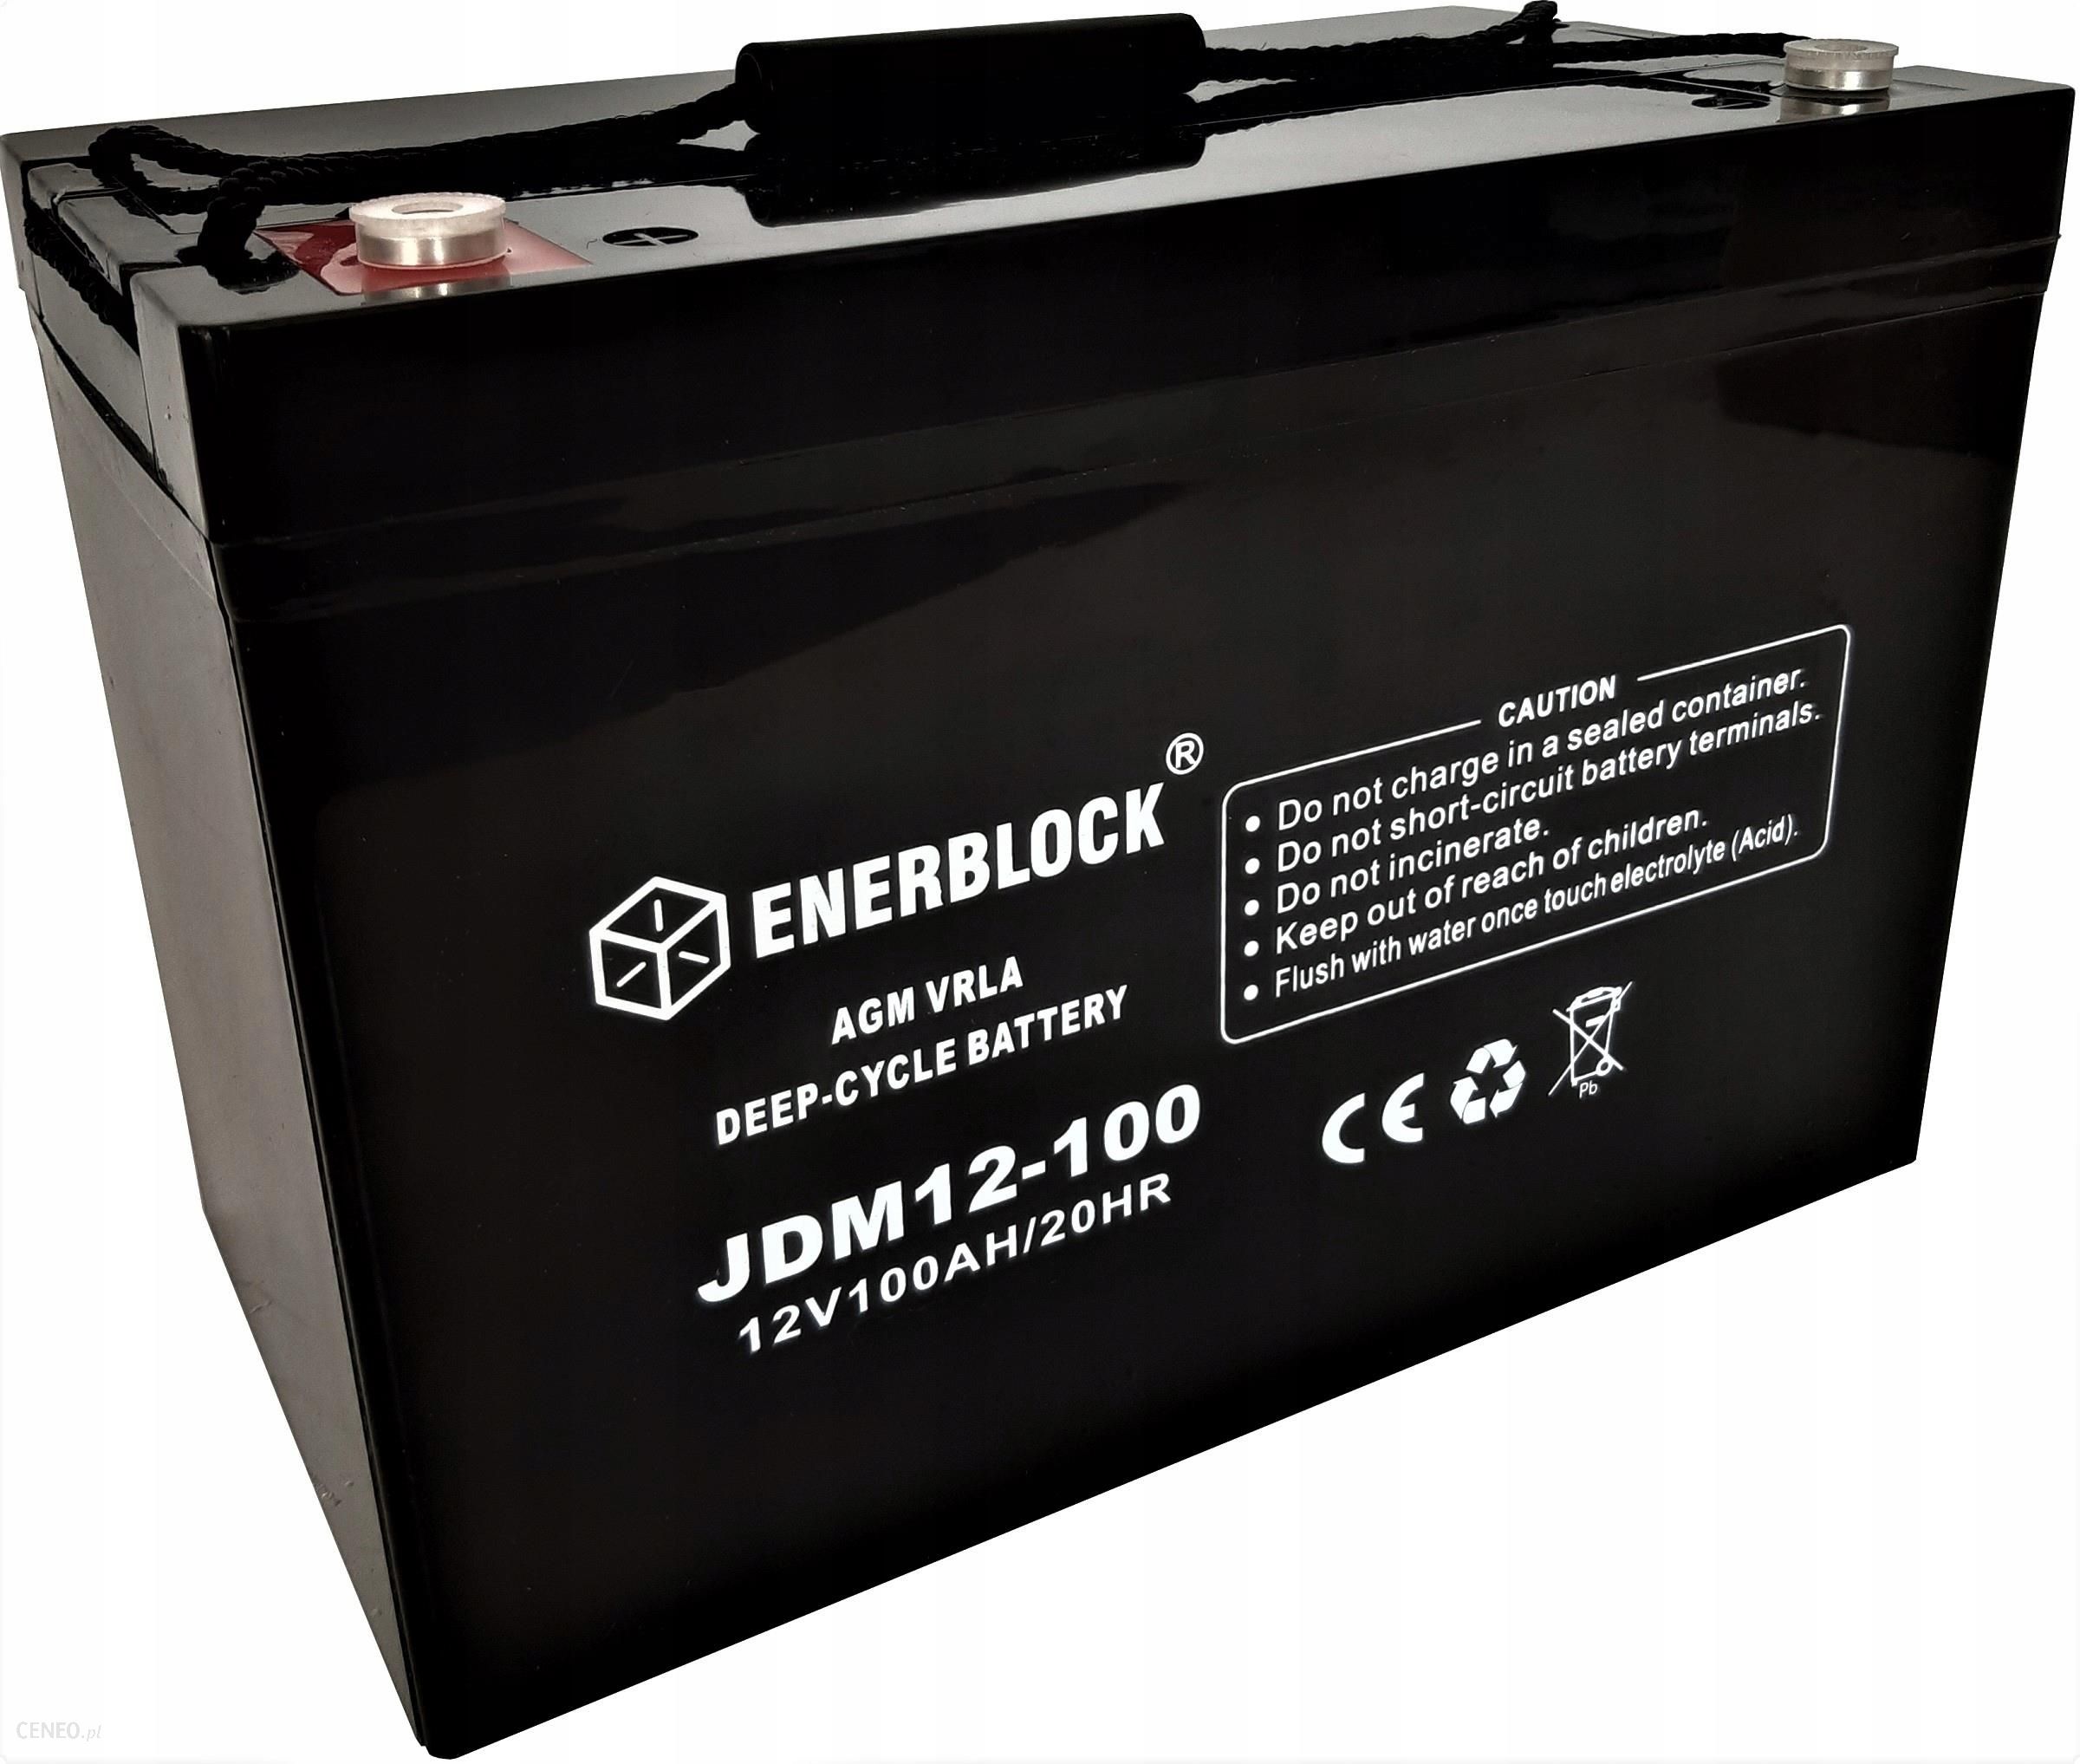 Billig: Batterie ENERBLOCK JDG - GEL-Hybrid 12V 100AH »